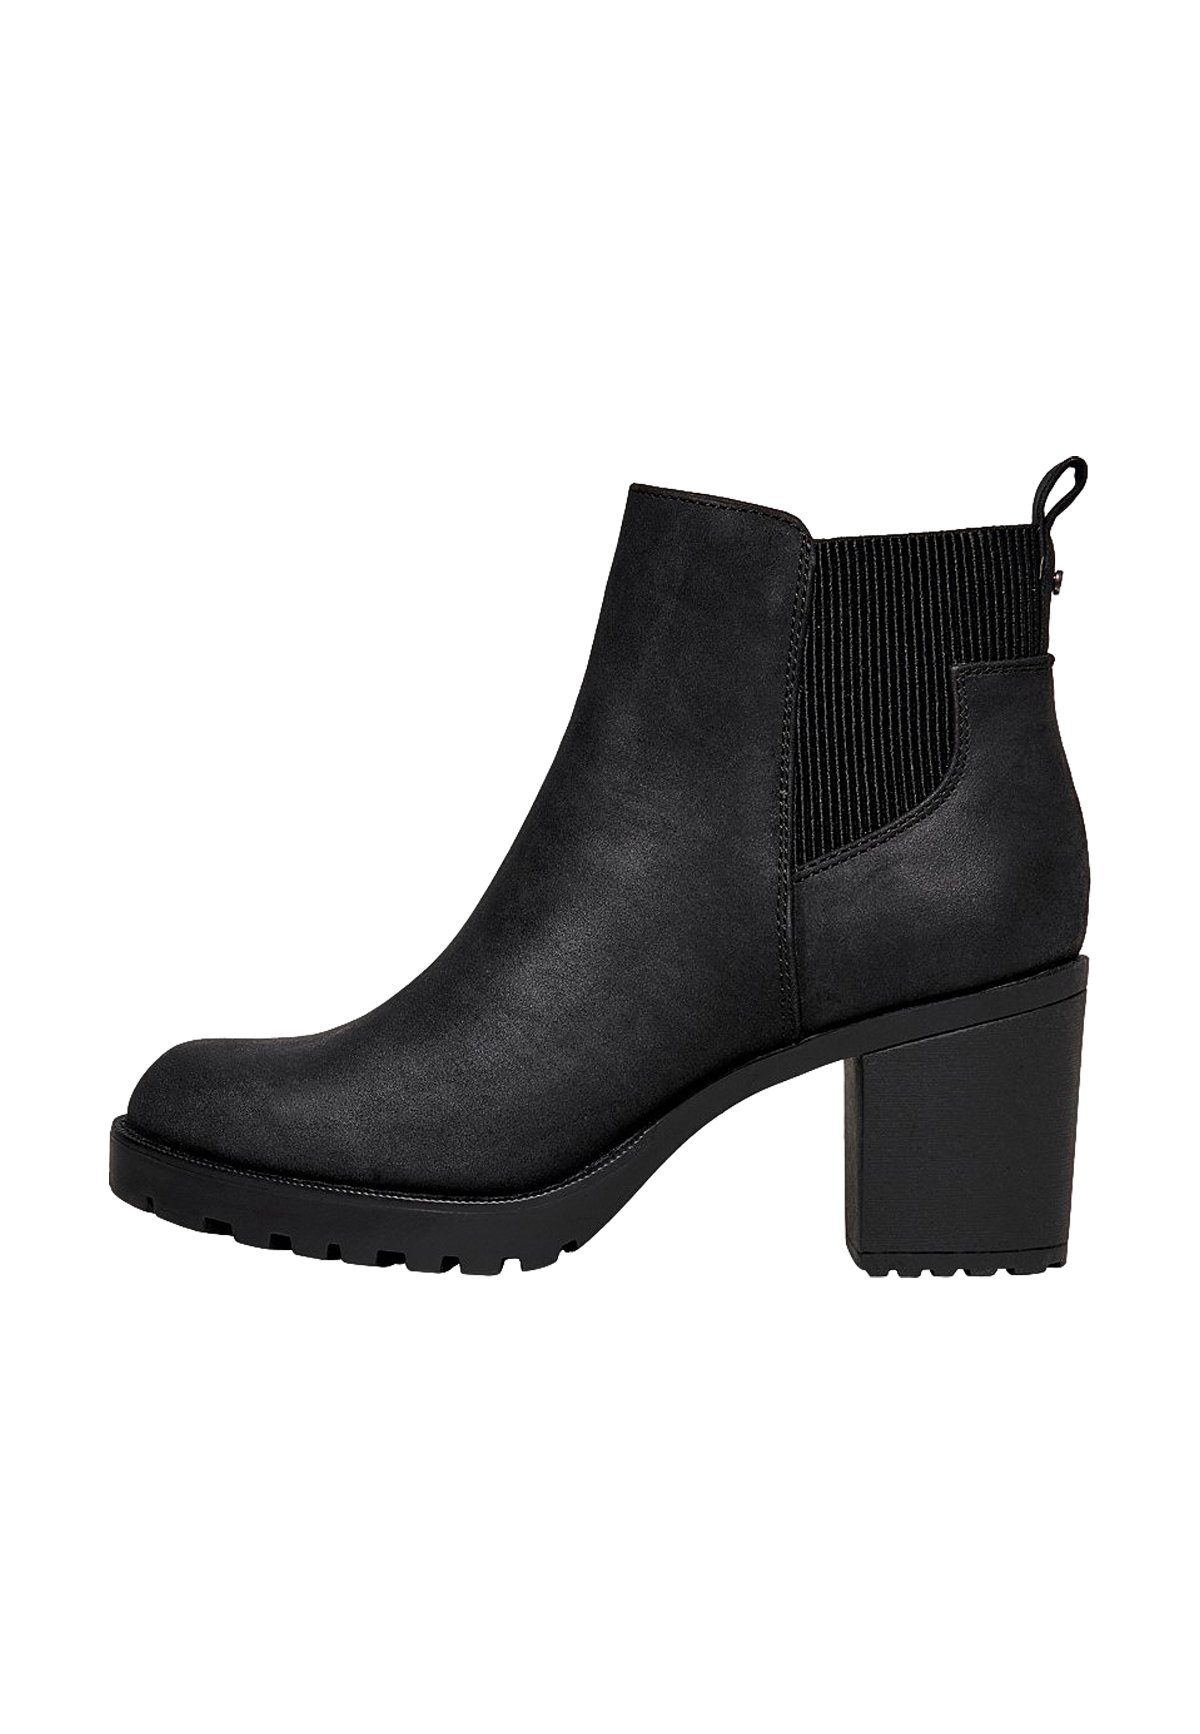 Only »Chelsea Boots mit Absatz Ankle Stiefeletten Bootie Schuhe ONLBARBARA«  Stiefel 4298 in Schwarz online kaufen | OTTO